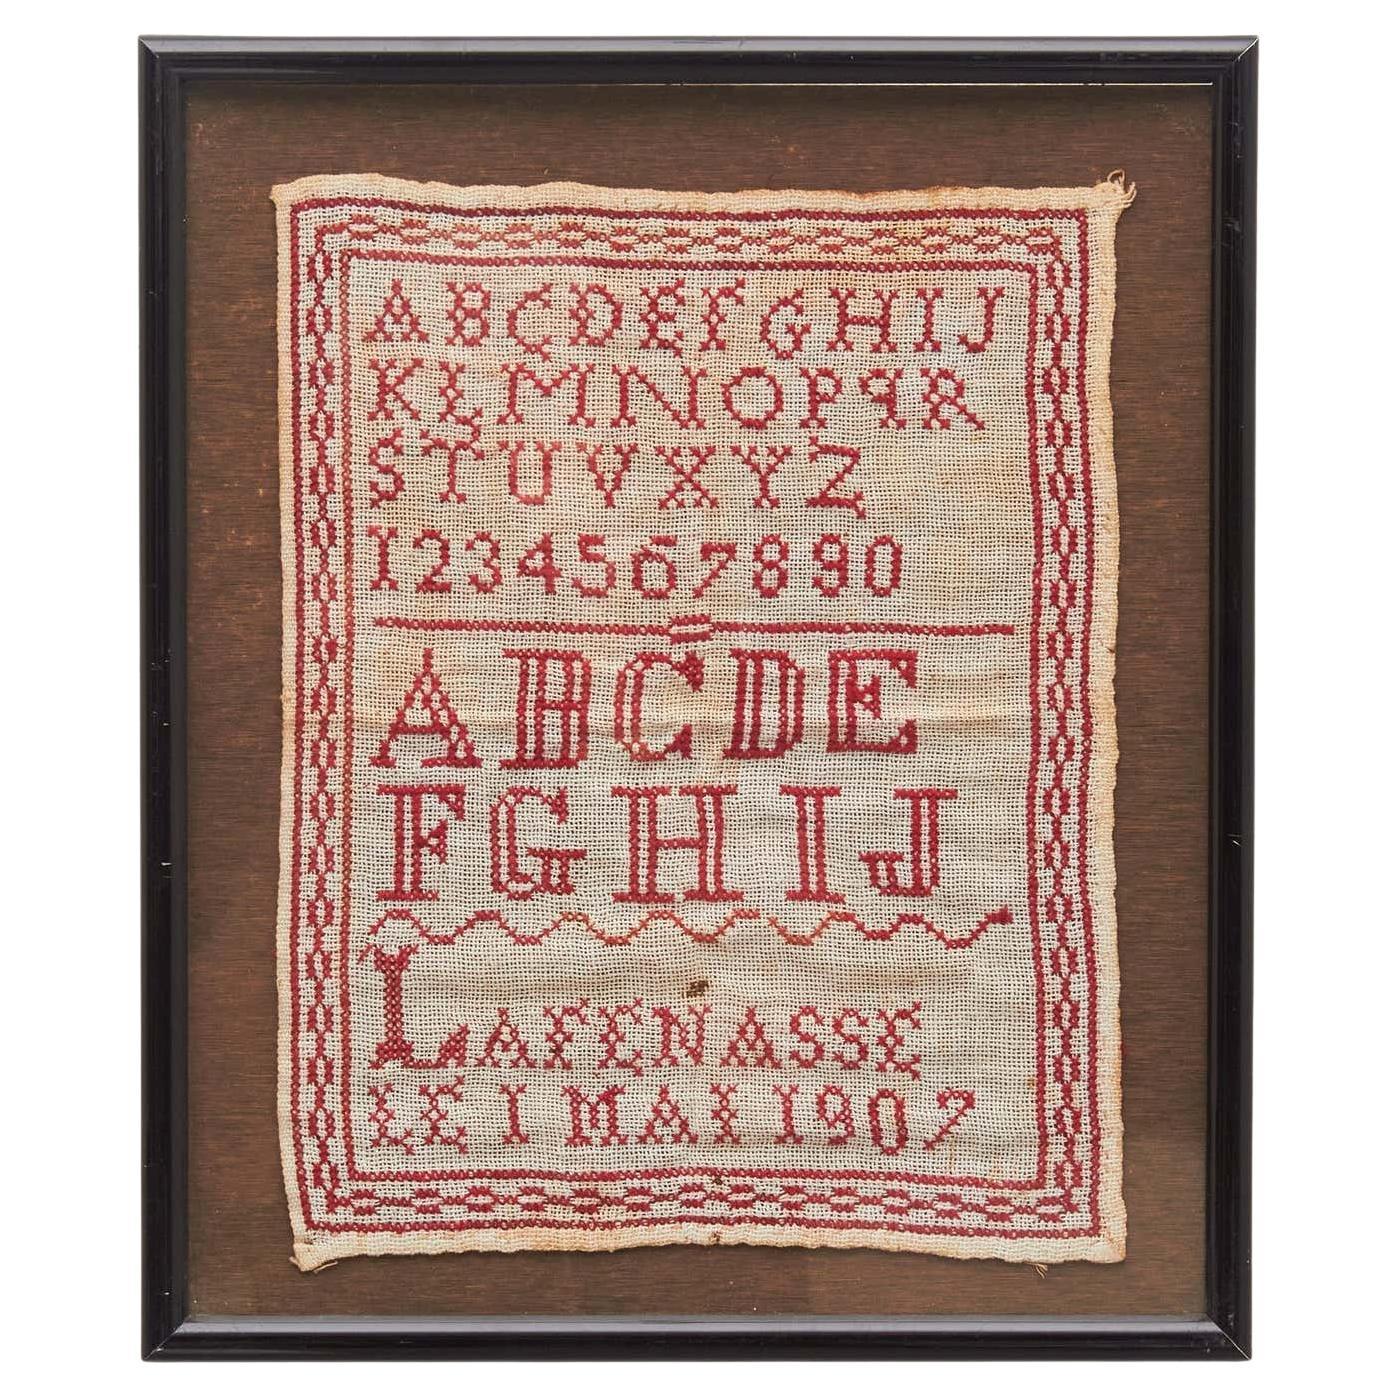 Elegante Nostalgia: Vintage Cross-Stitch-Sammlerstücke des 20. Jahrhunderts – Rot auf Weiß